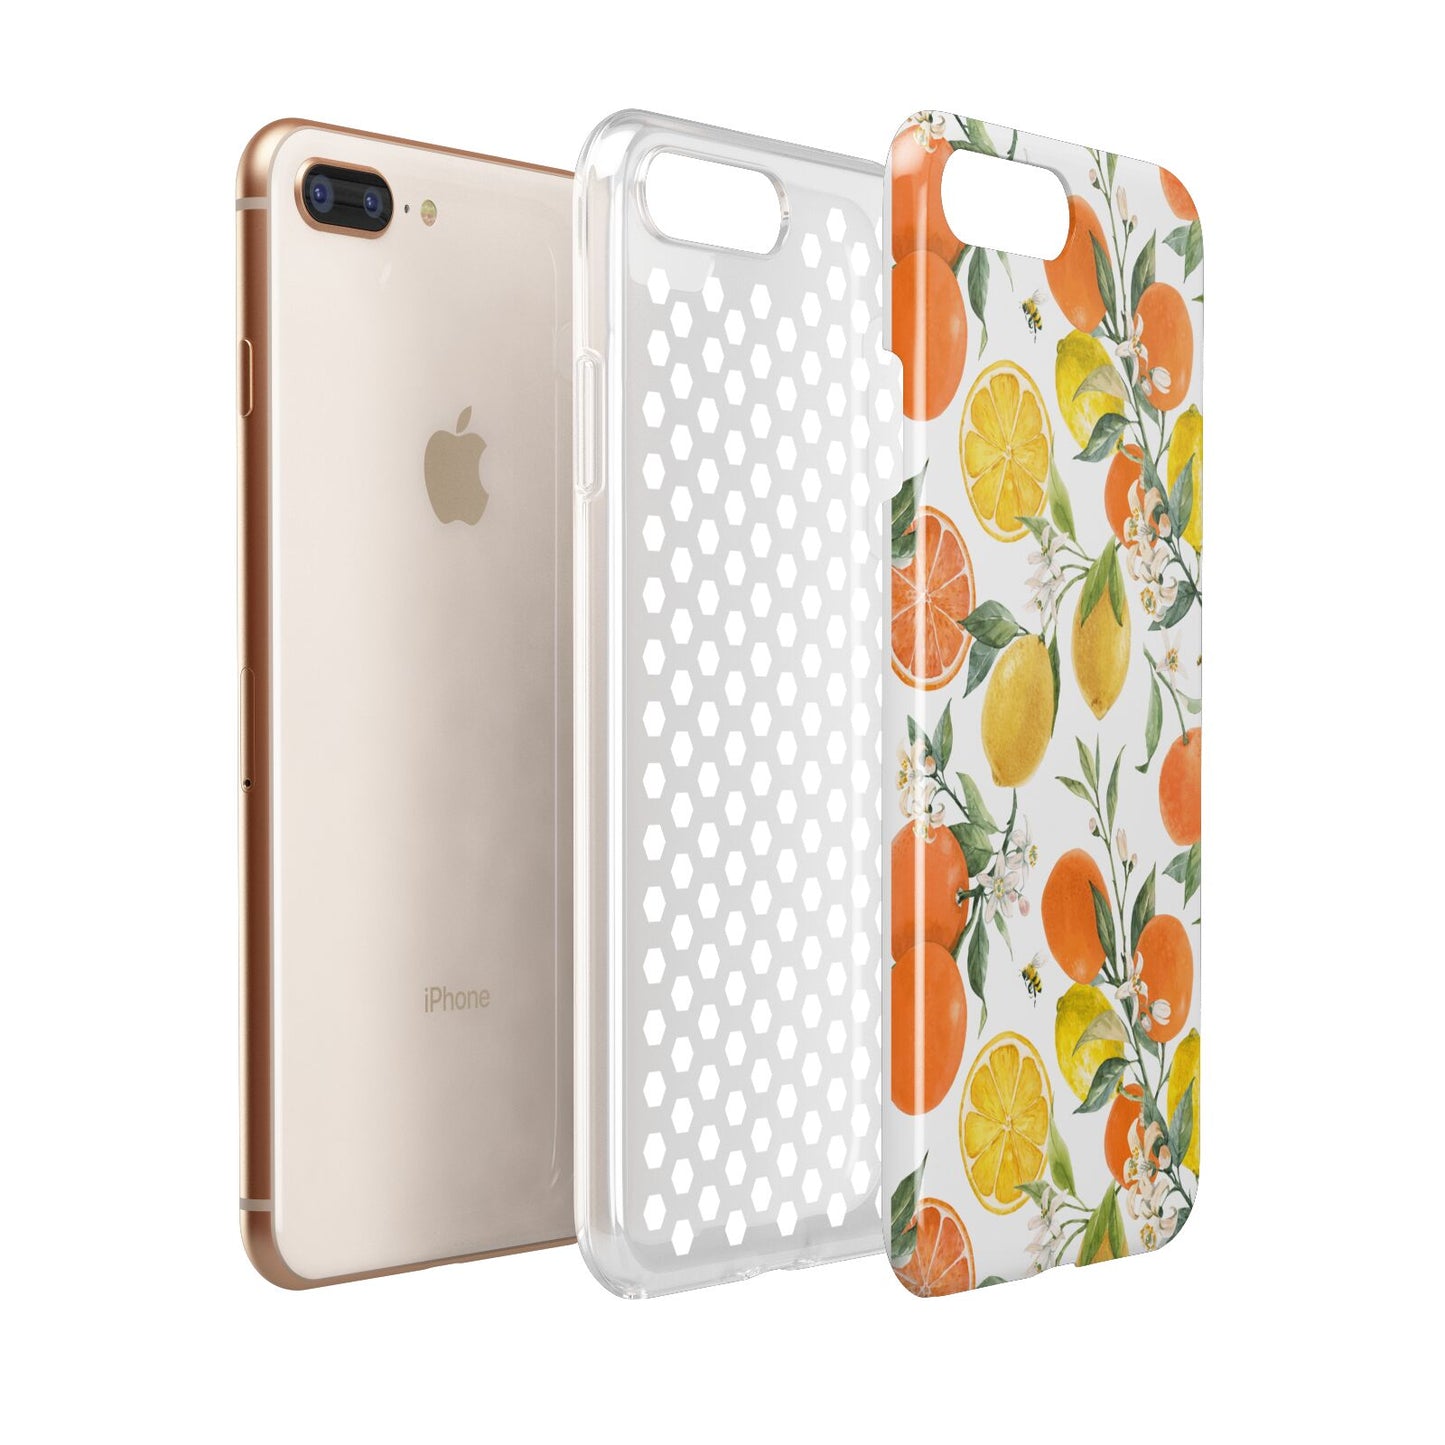 Lemons and Oranges Apple iPhone 7 8 Plus 3D Tough Case Expanded View